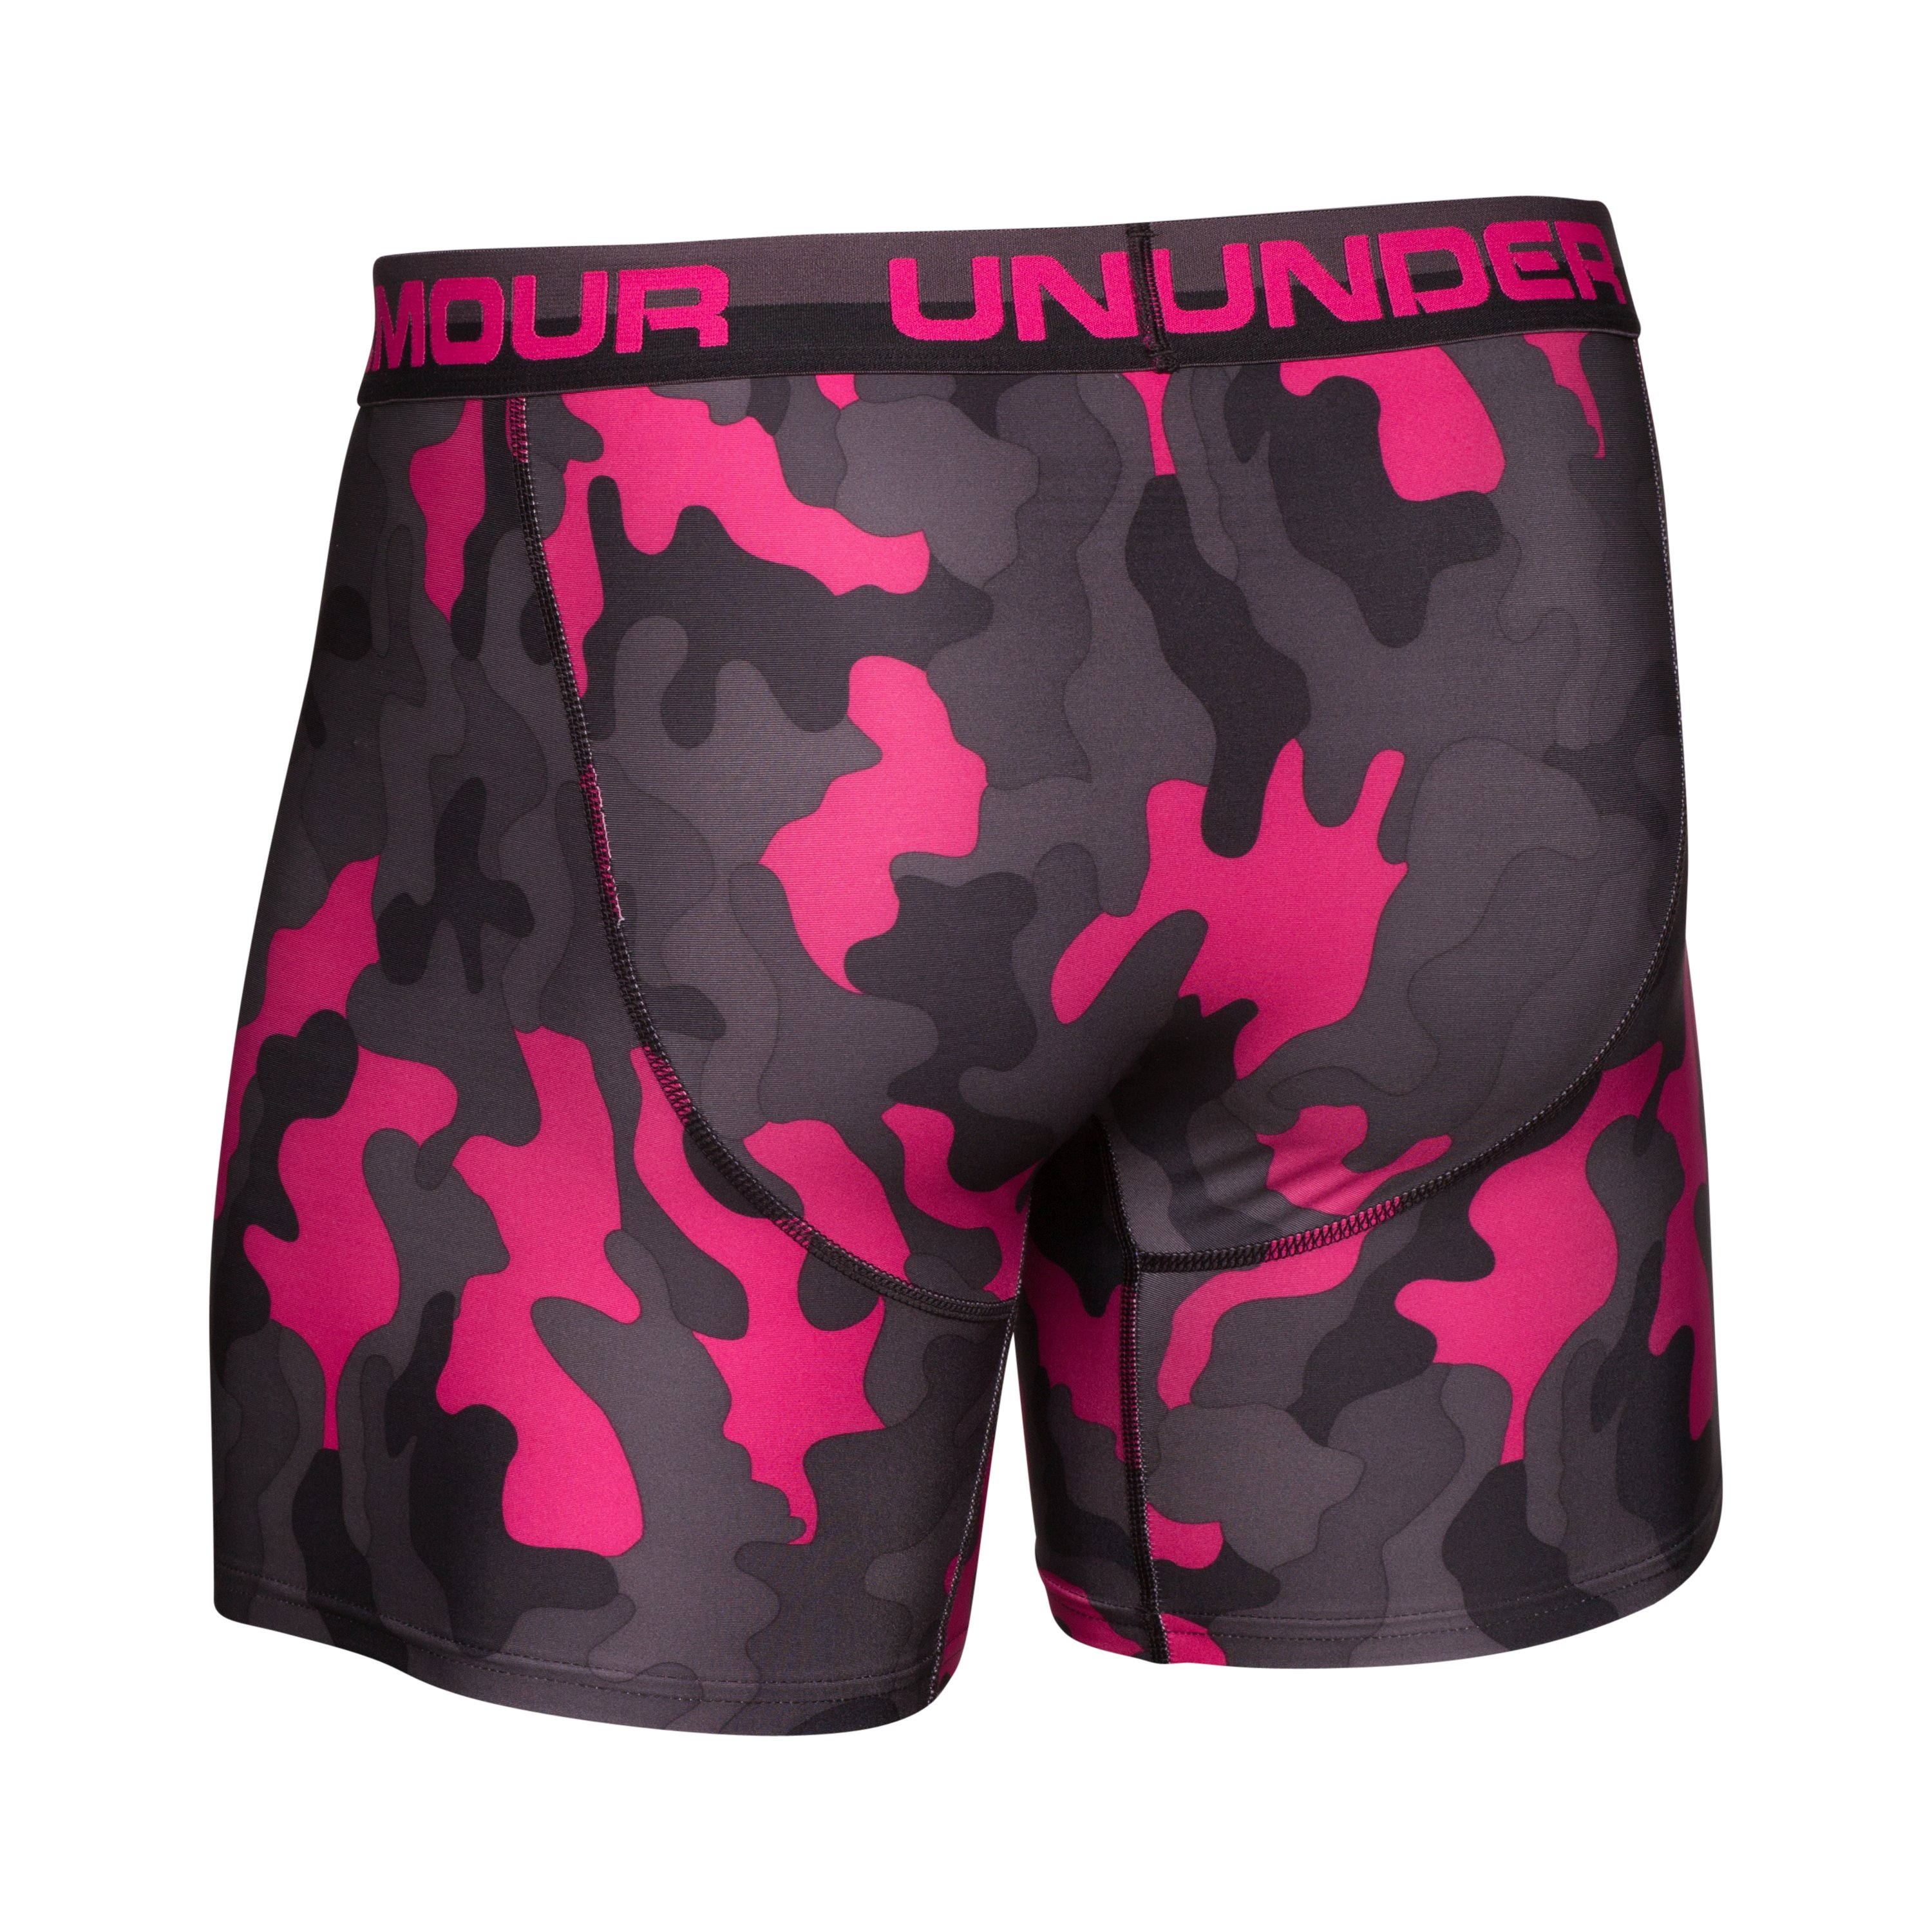 Under Armour Men's Ua Original Series Printed 6 Boxerjock® in Pink for Men